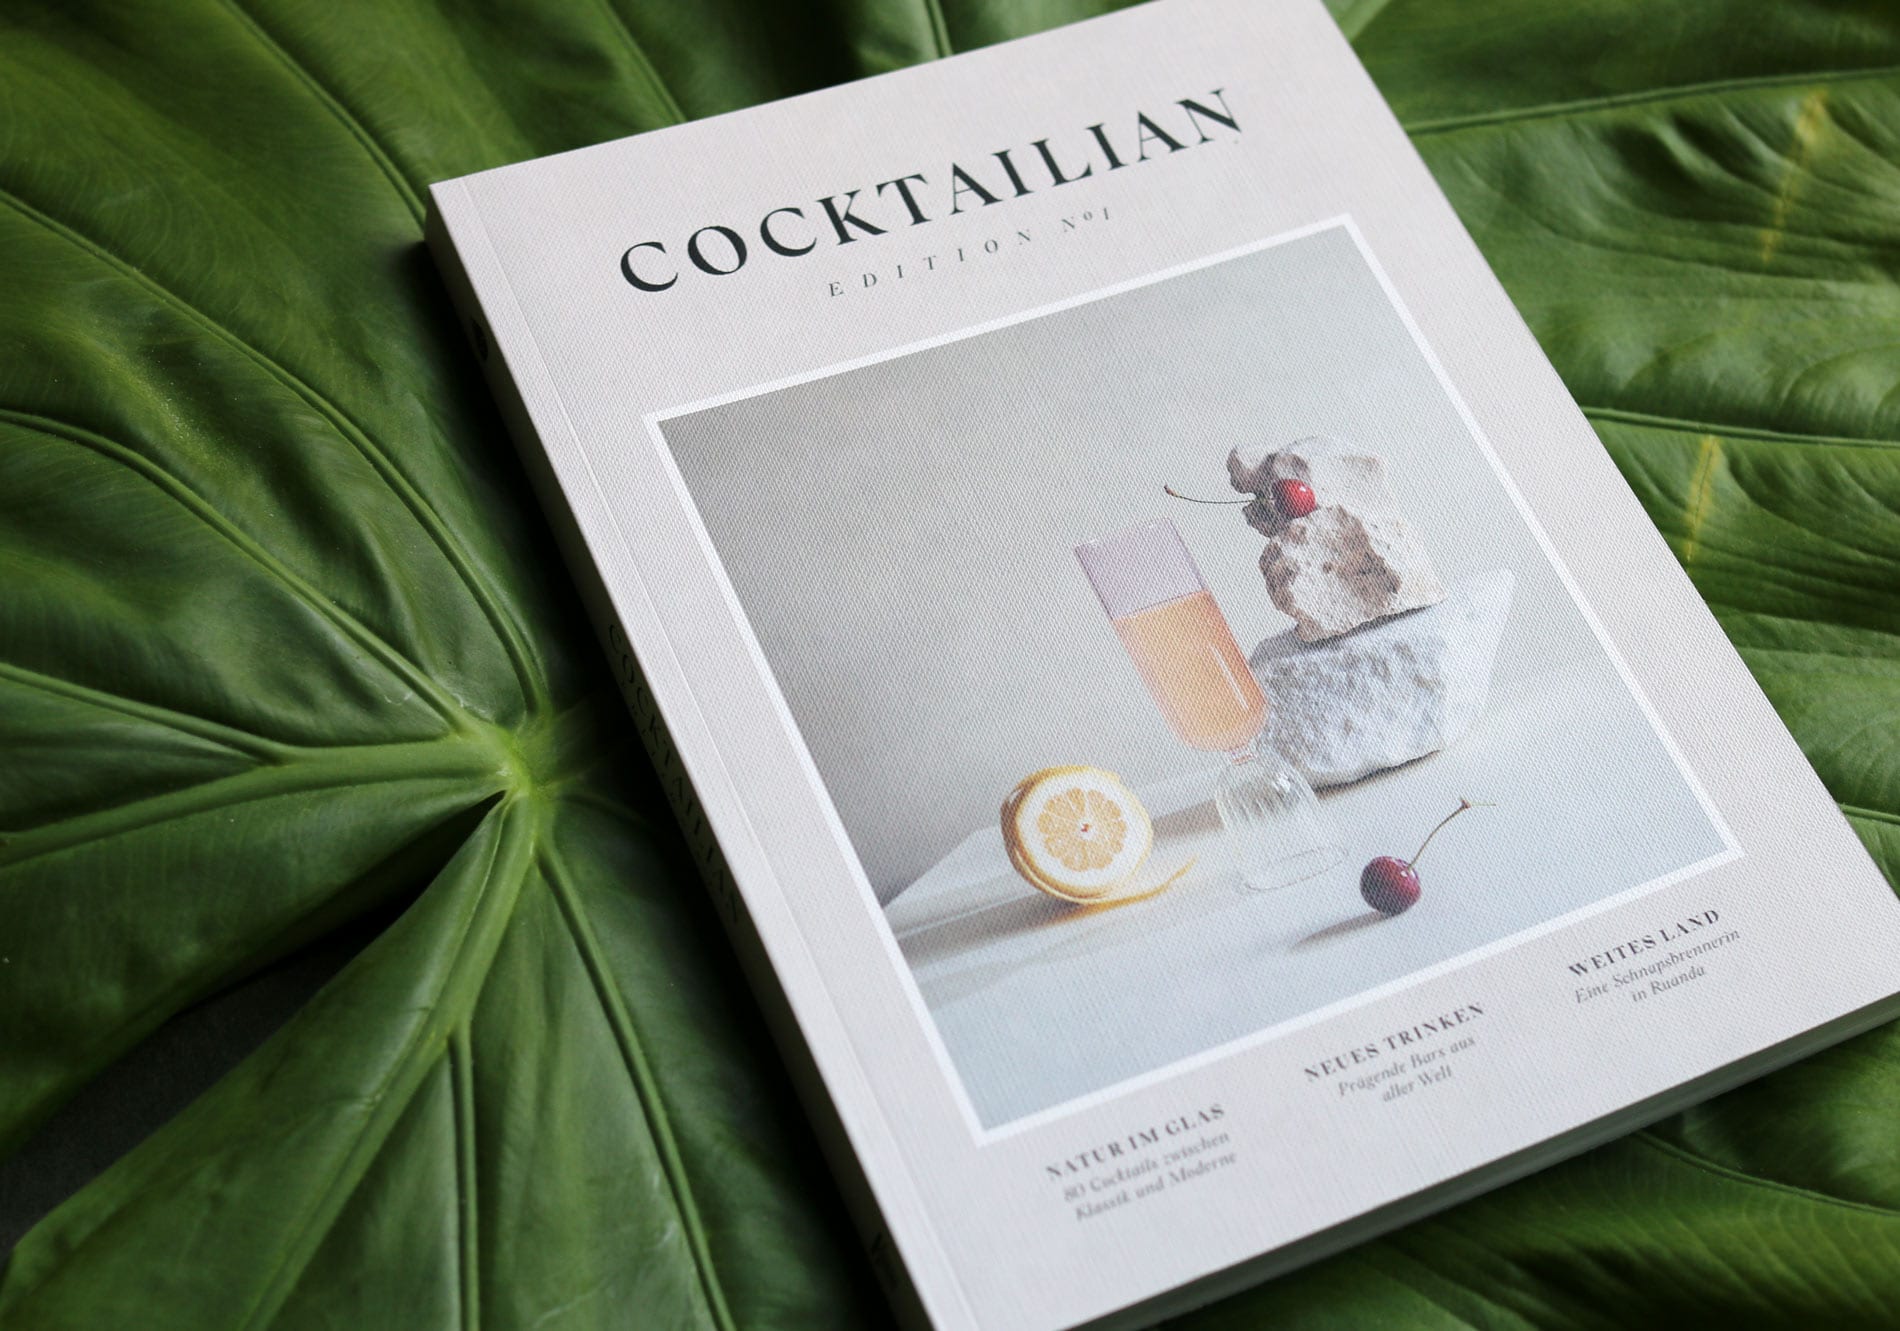 Cocktailian Edition Buchvorstellung